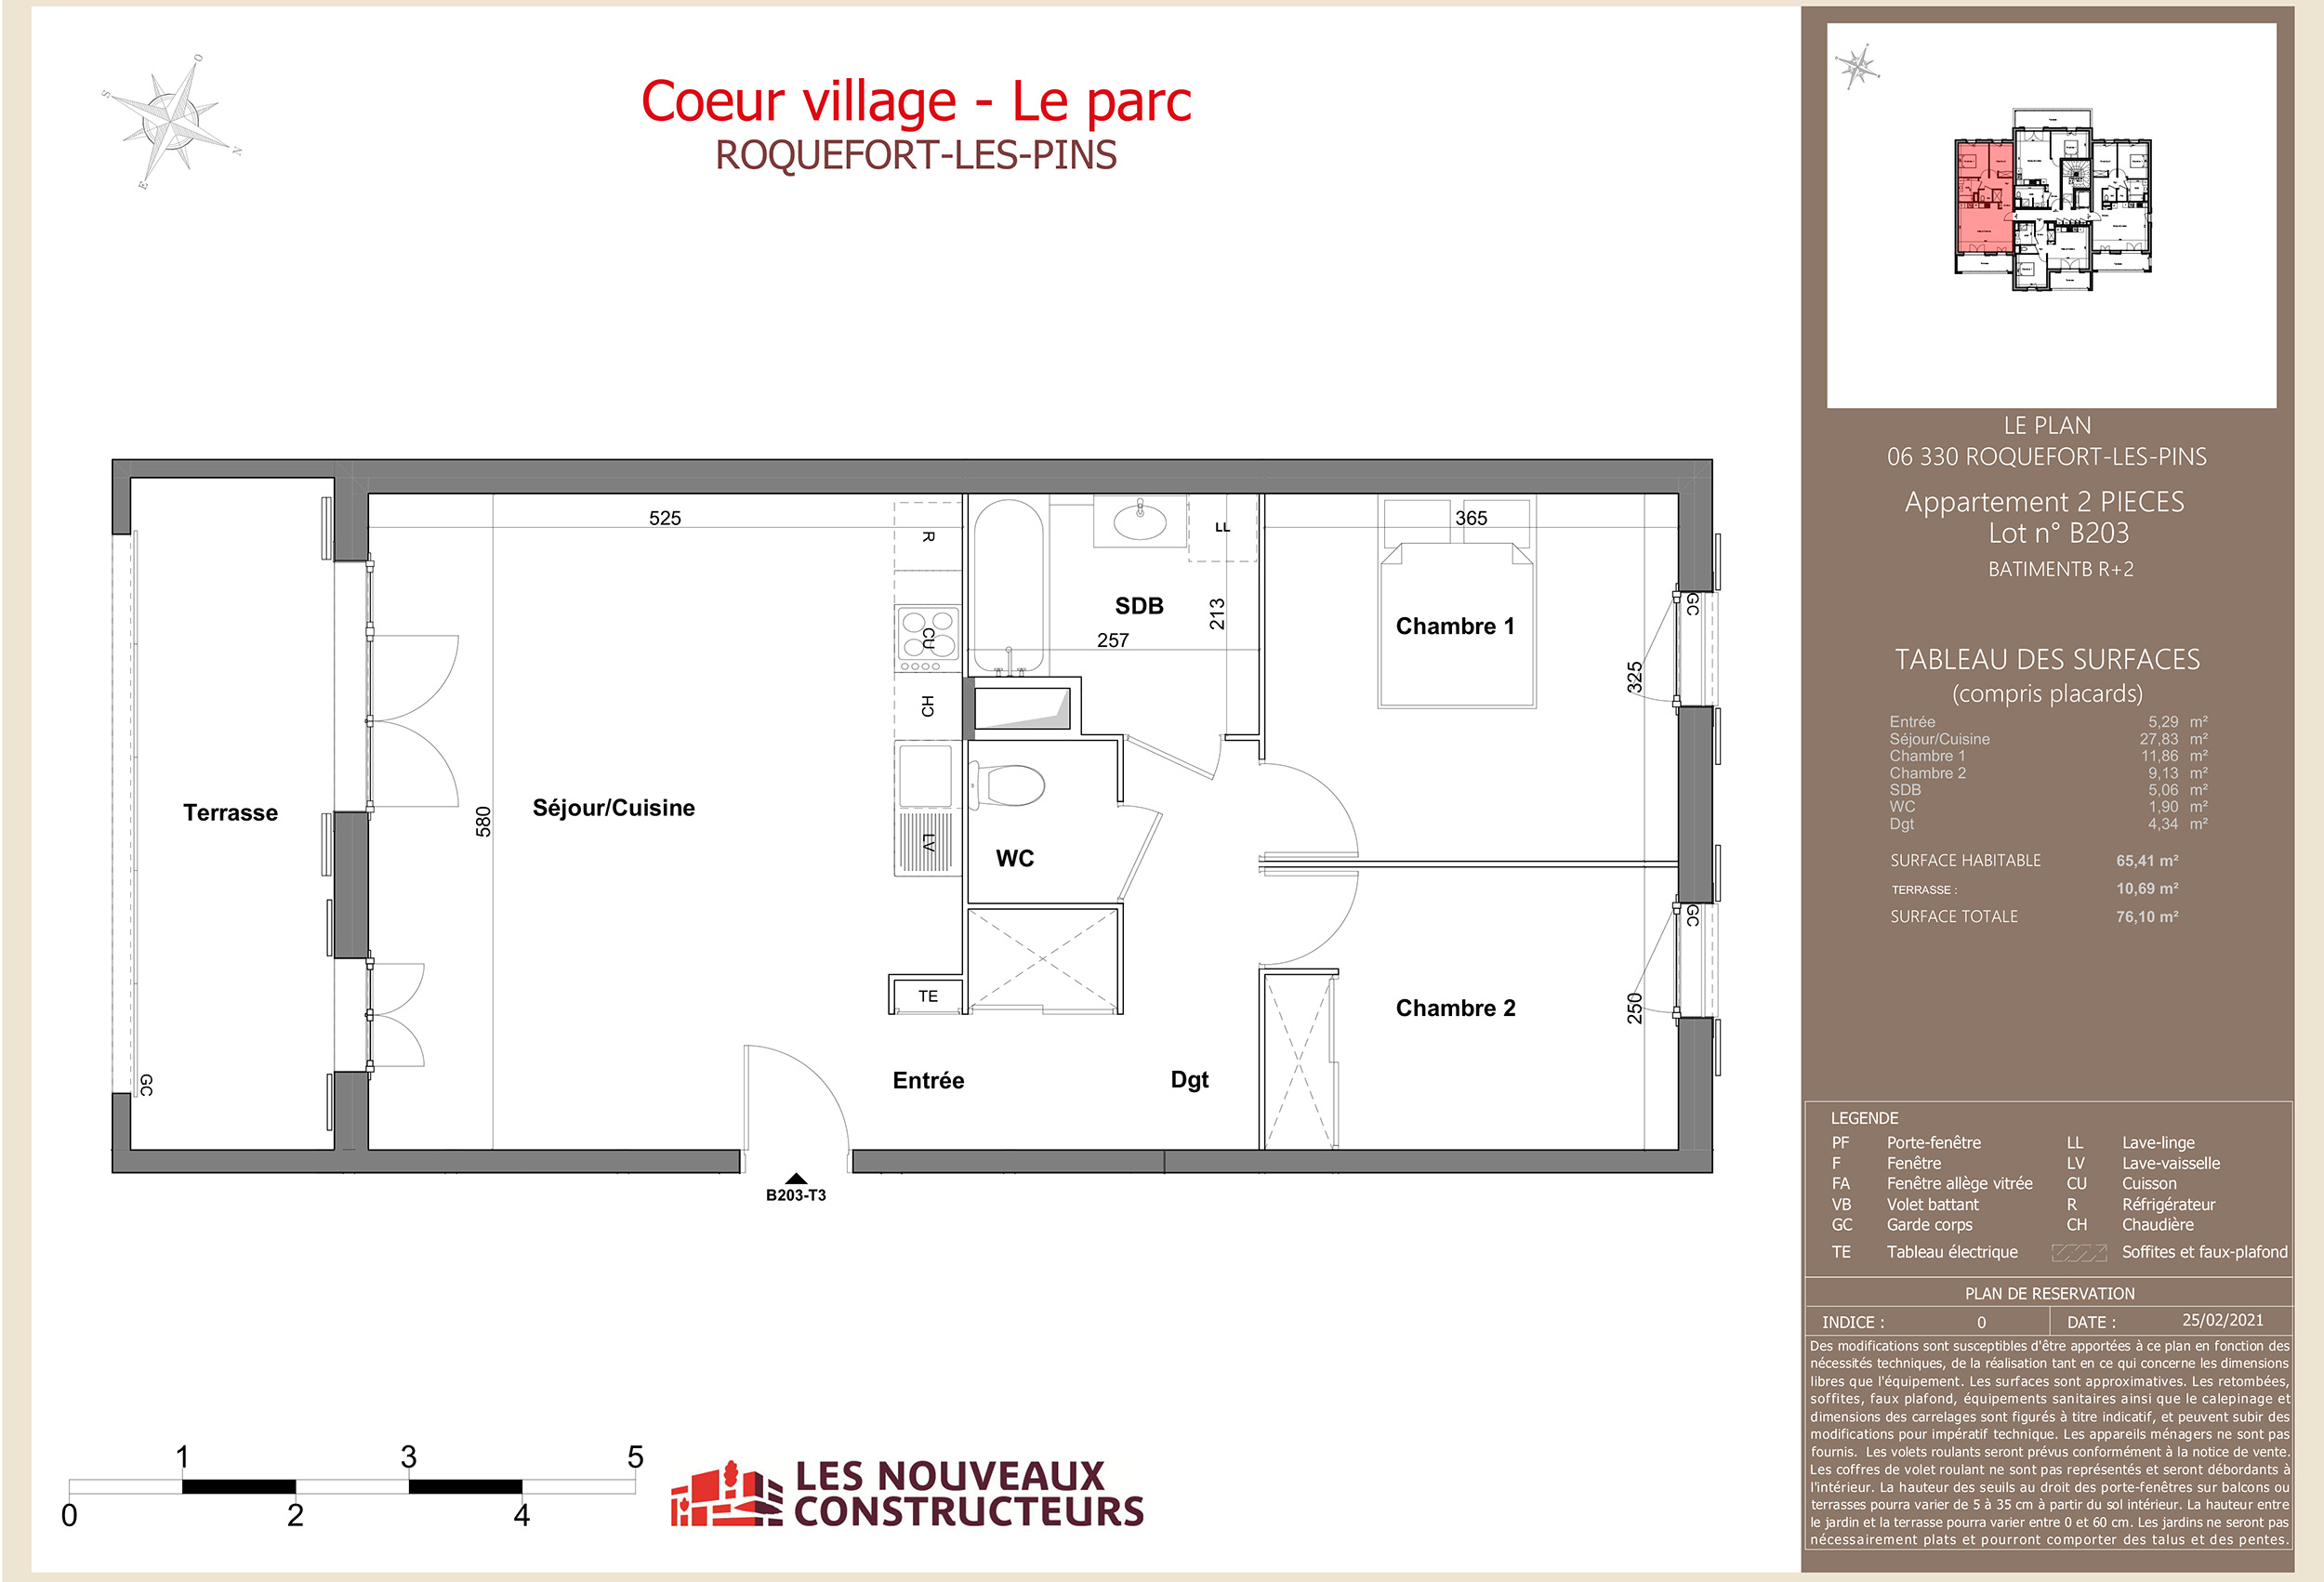 ROQUEFORT-LES-PINS - Coeur village - Le parc - Lot b203 - 2 pieces